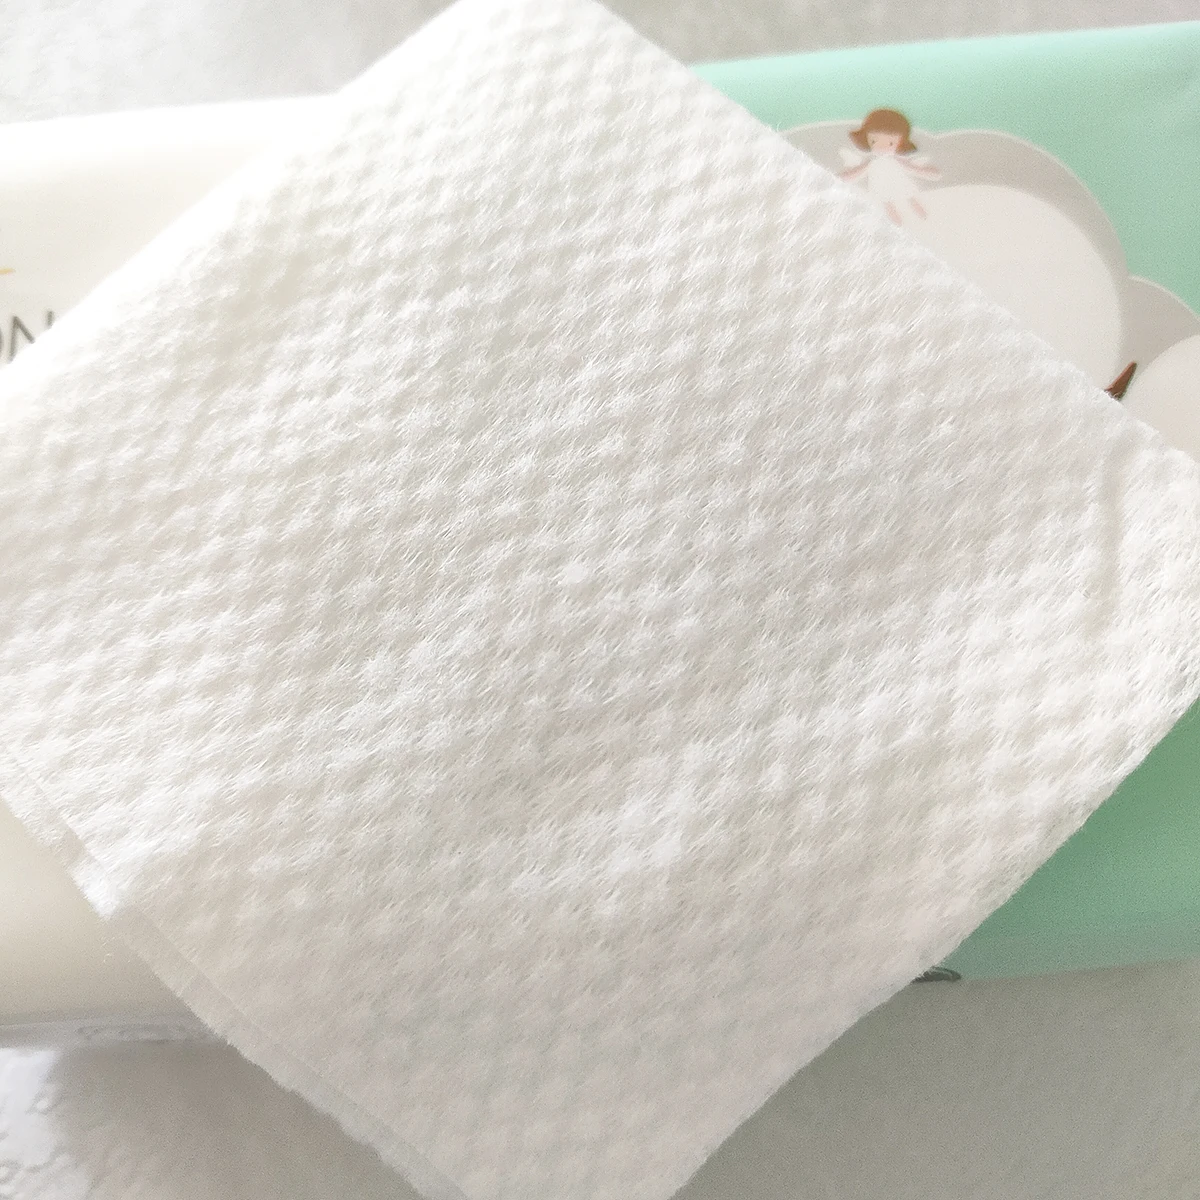 Cotton Towel Disposable 100% Cotton Non-woven Plant Fiber Microfiber Soft Face Towel